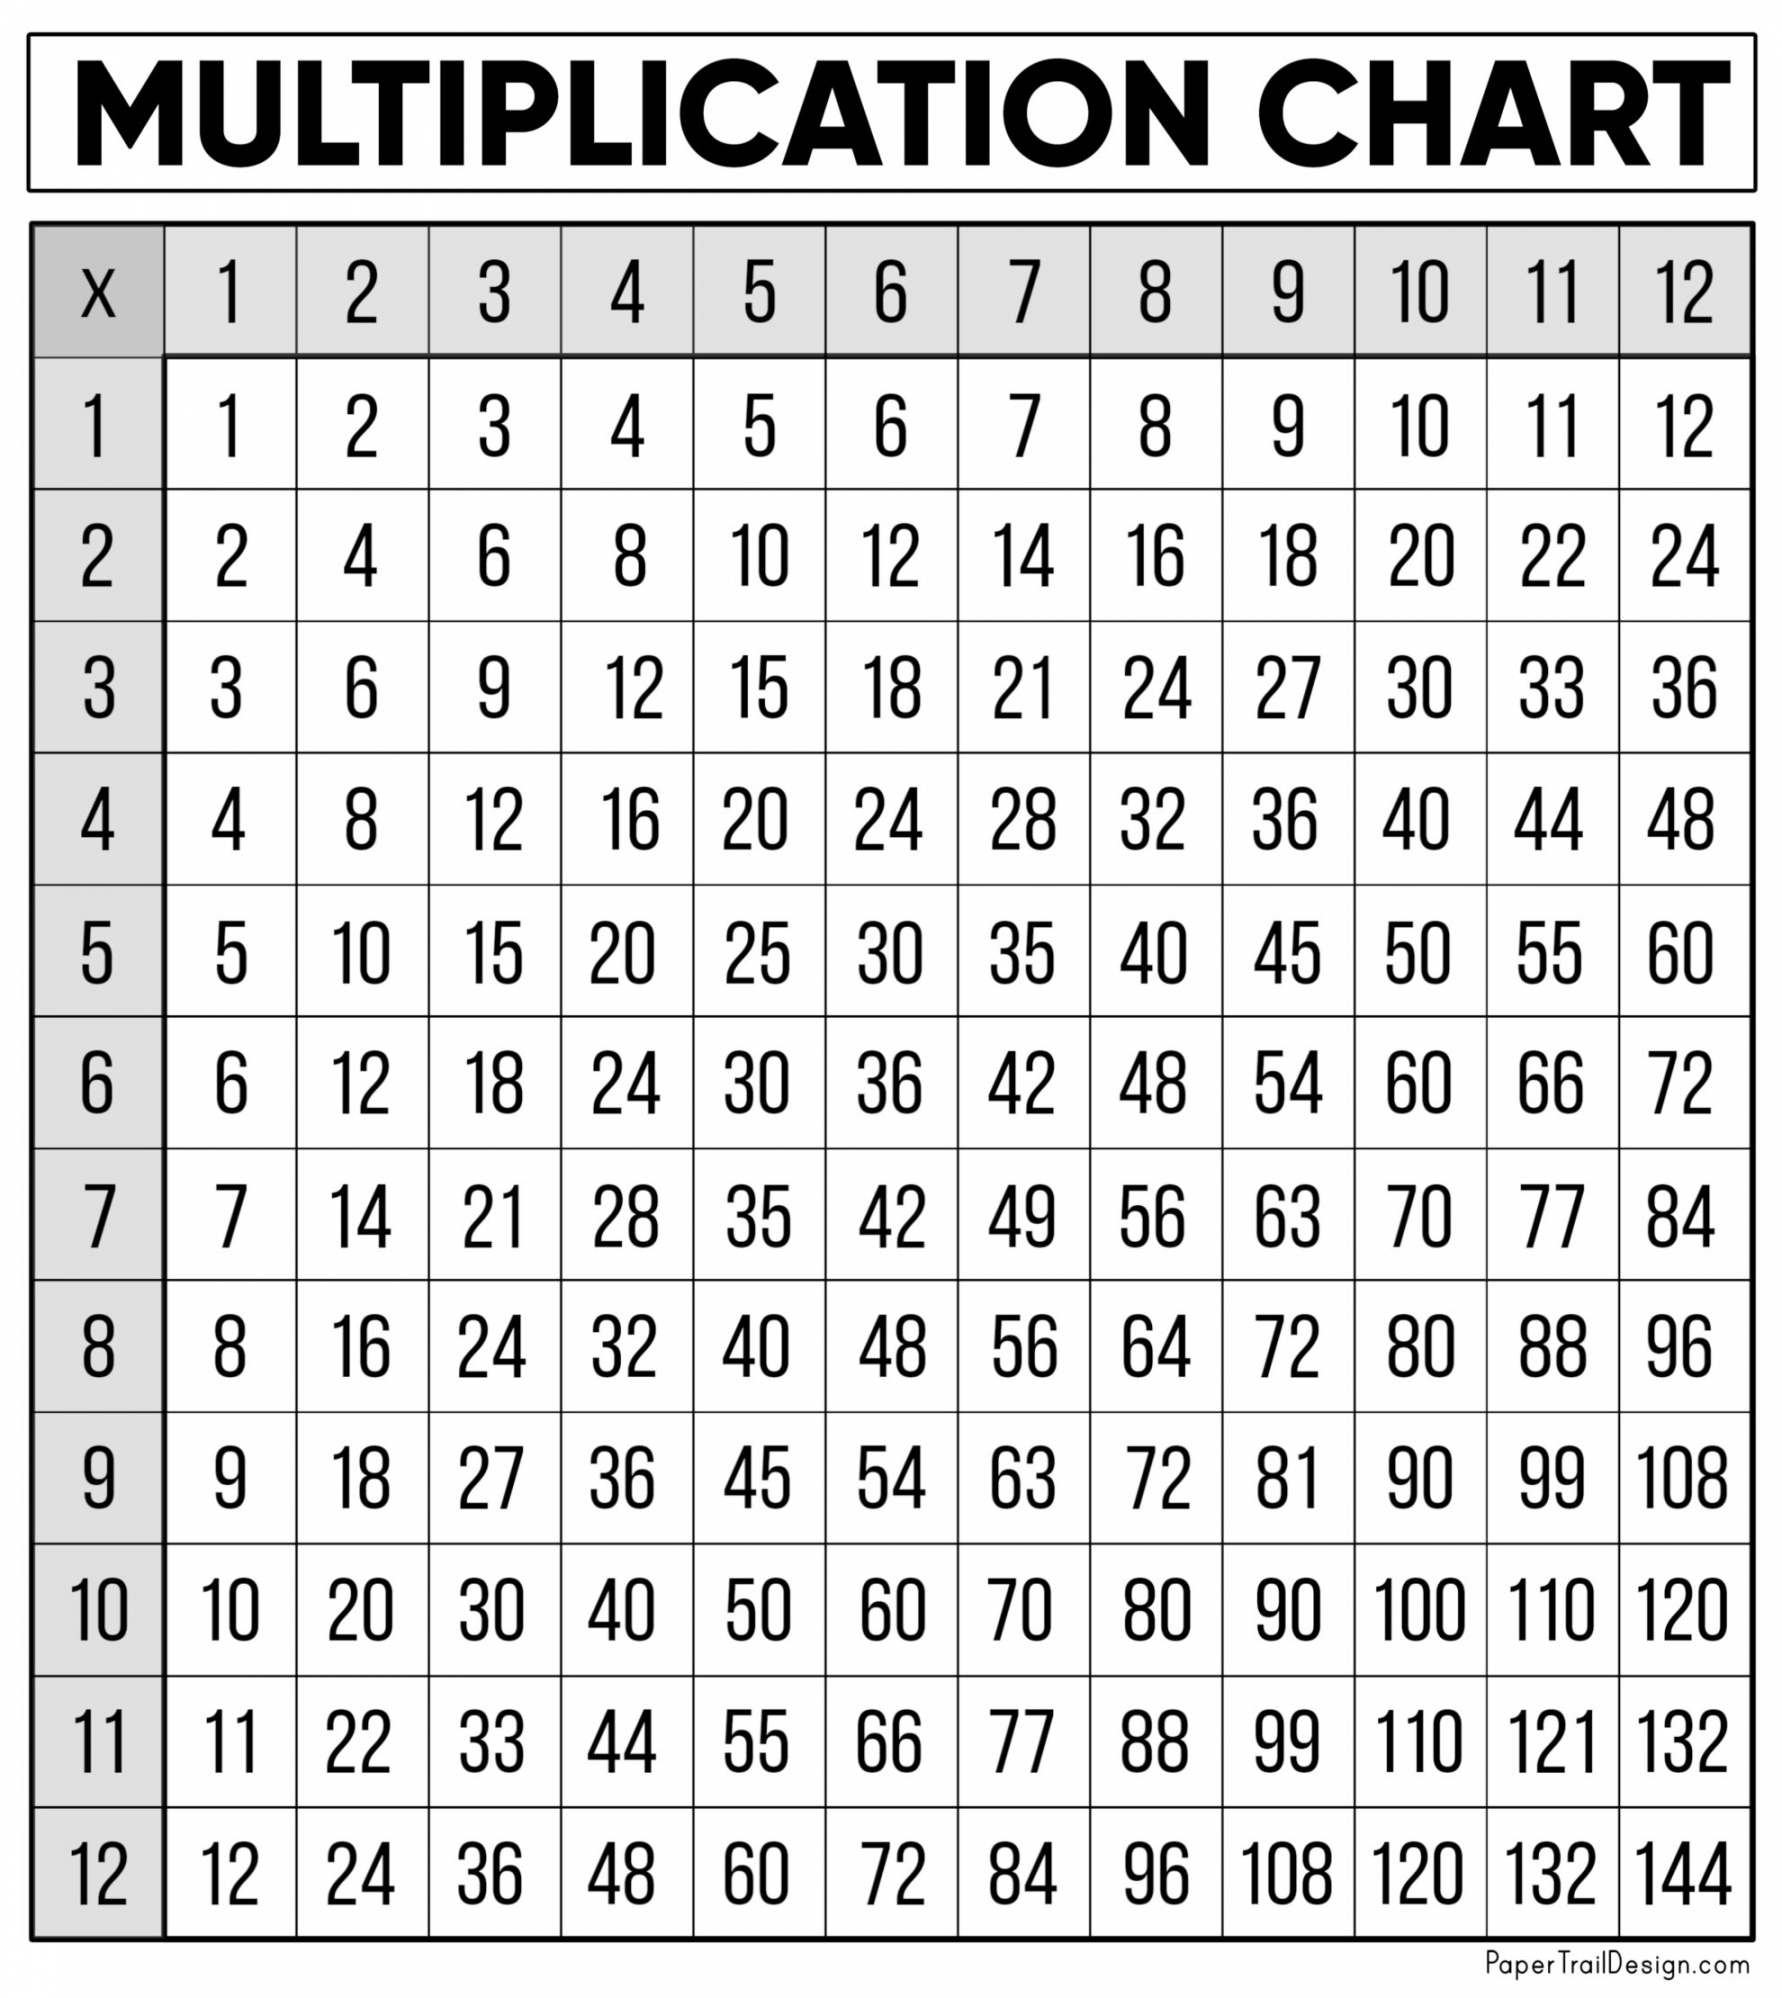 Multiplication Chart Free Printable - Printable - Free Multiplication Chart Printable - Paper Trail Design